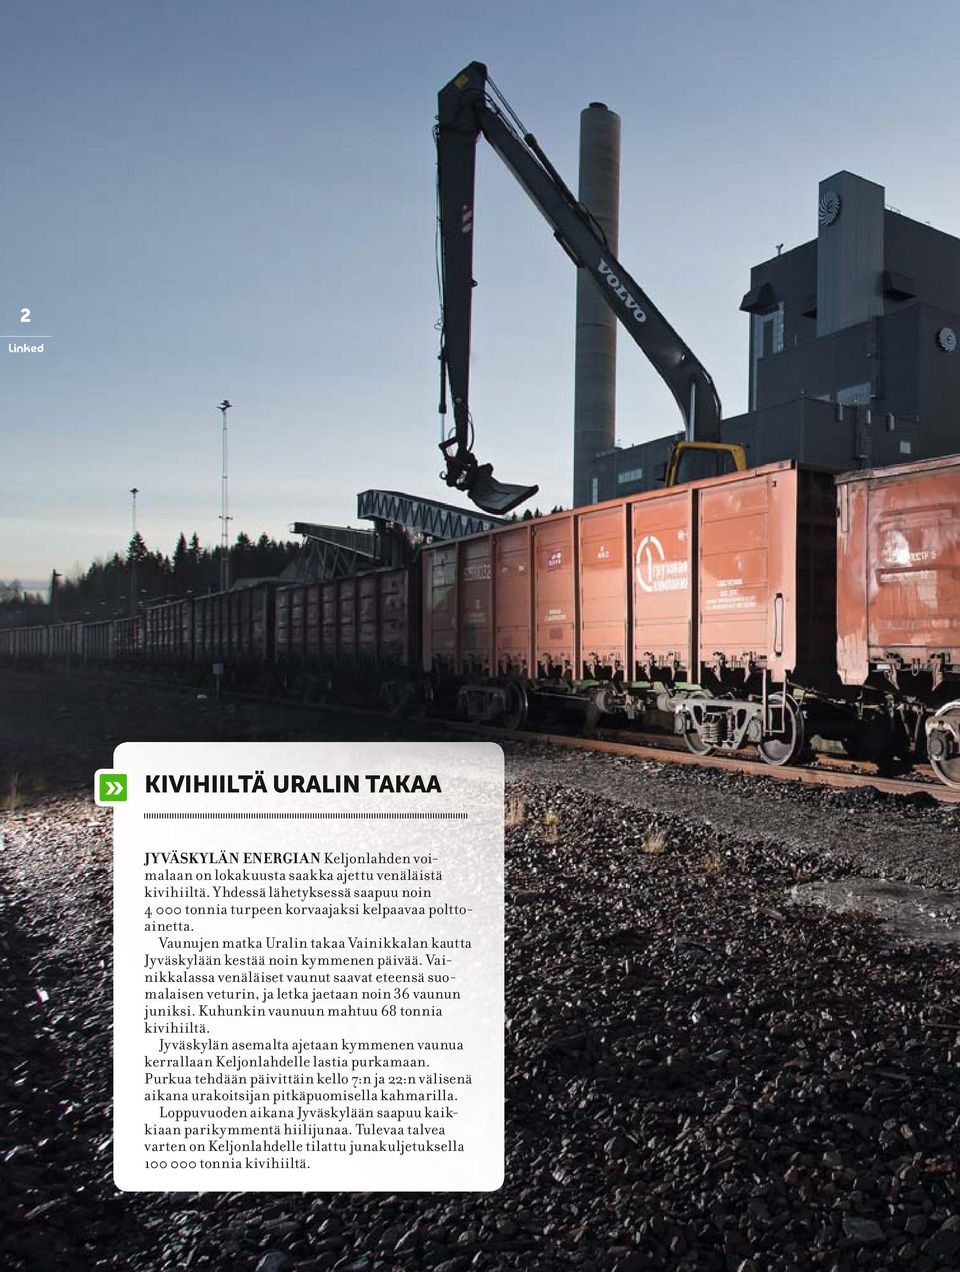 Vainikkalassa venäläiset vaunut saavat eteensä suomalaisen veturin, ja letka jaetaan noin 36 vaunun juniksi. Kuhunkin vaunuun mahtuu 68 tonnia kivihiiltä.